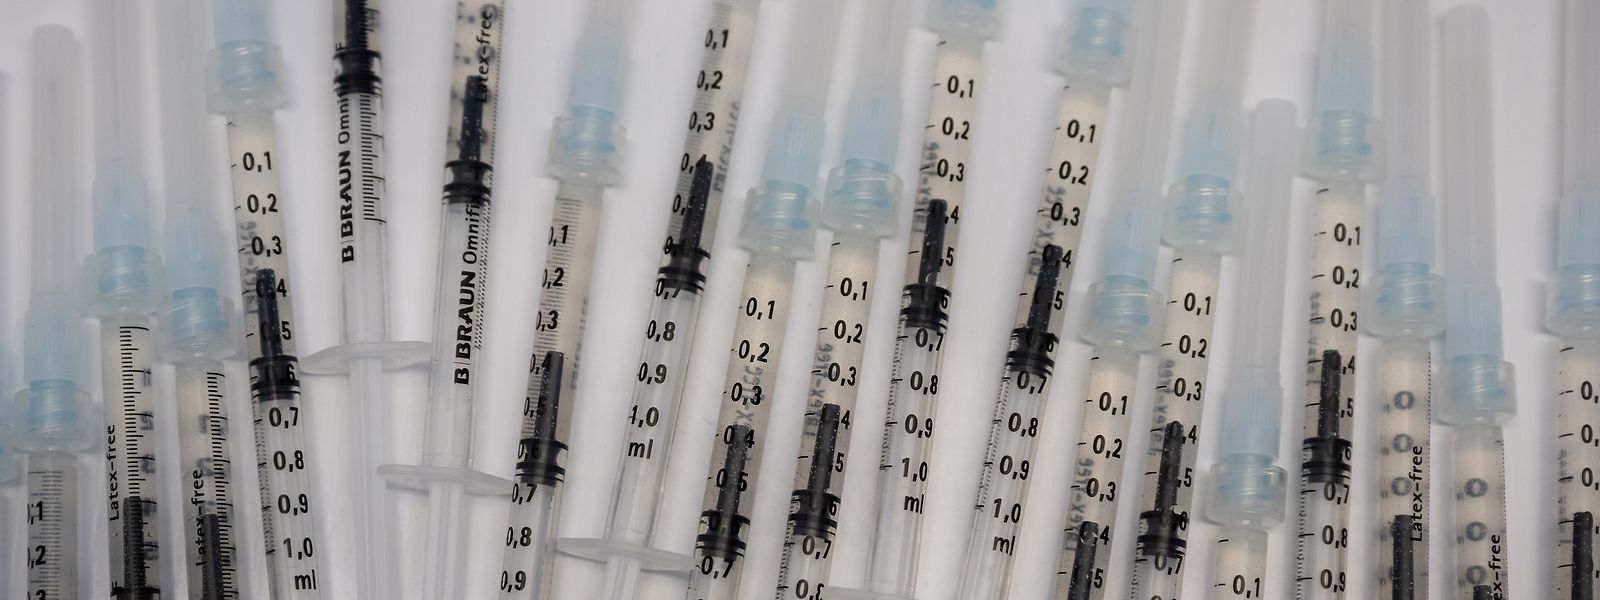 Face aux critiques, le ministre de la Santé François Braun avait assuré fin juillet que la France n'avait «pas pris de retard» et affirmé que le stock de vaccins anti-variole était «très conséquent»